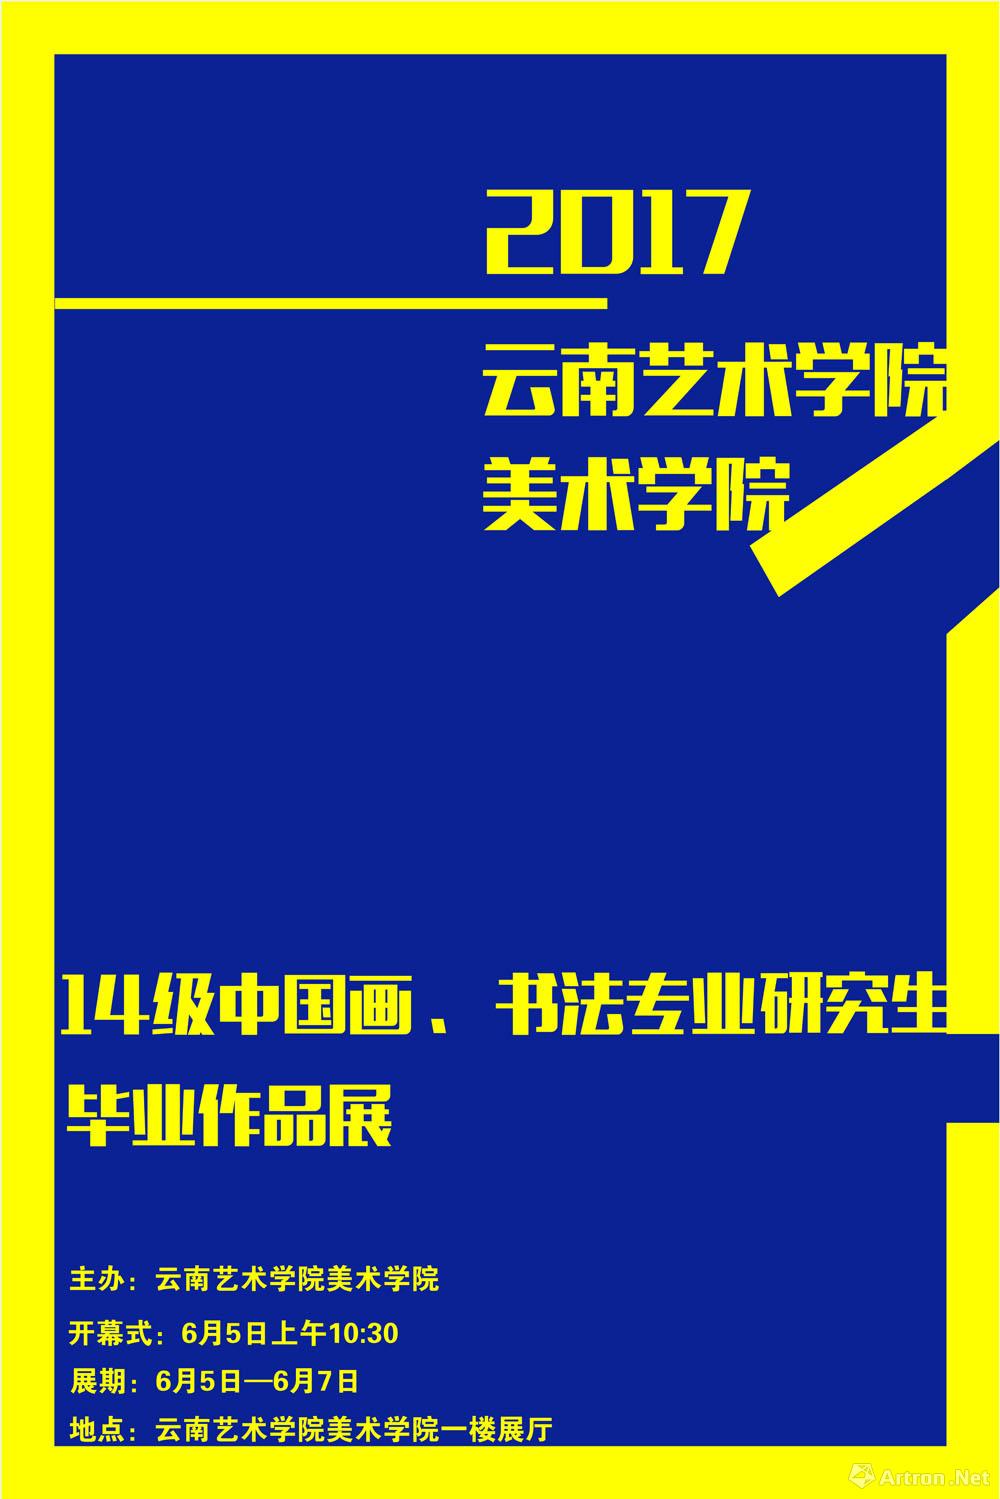 云南艺术学院美术学院2017年硕士毕业展览系列：第二场 中国画和书法